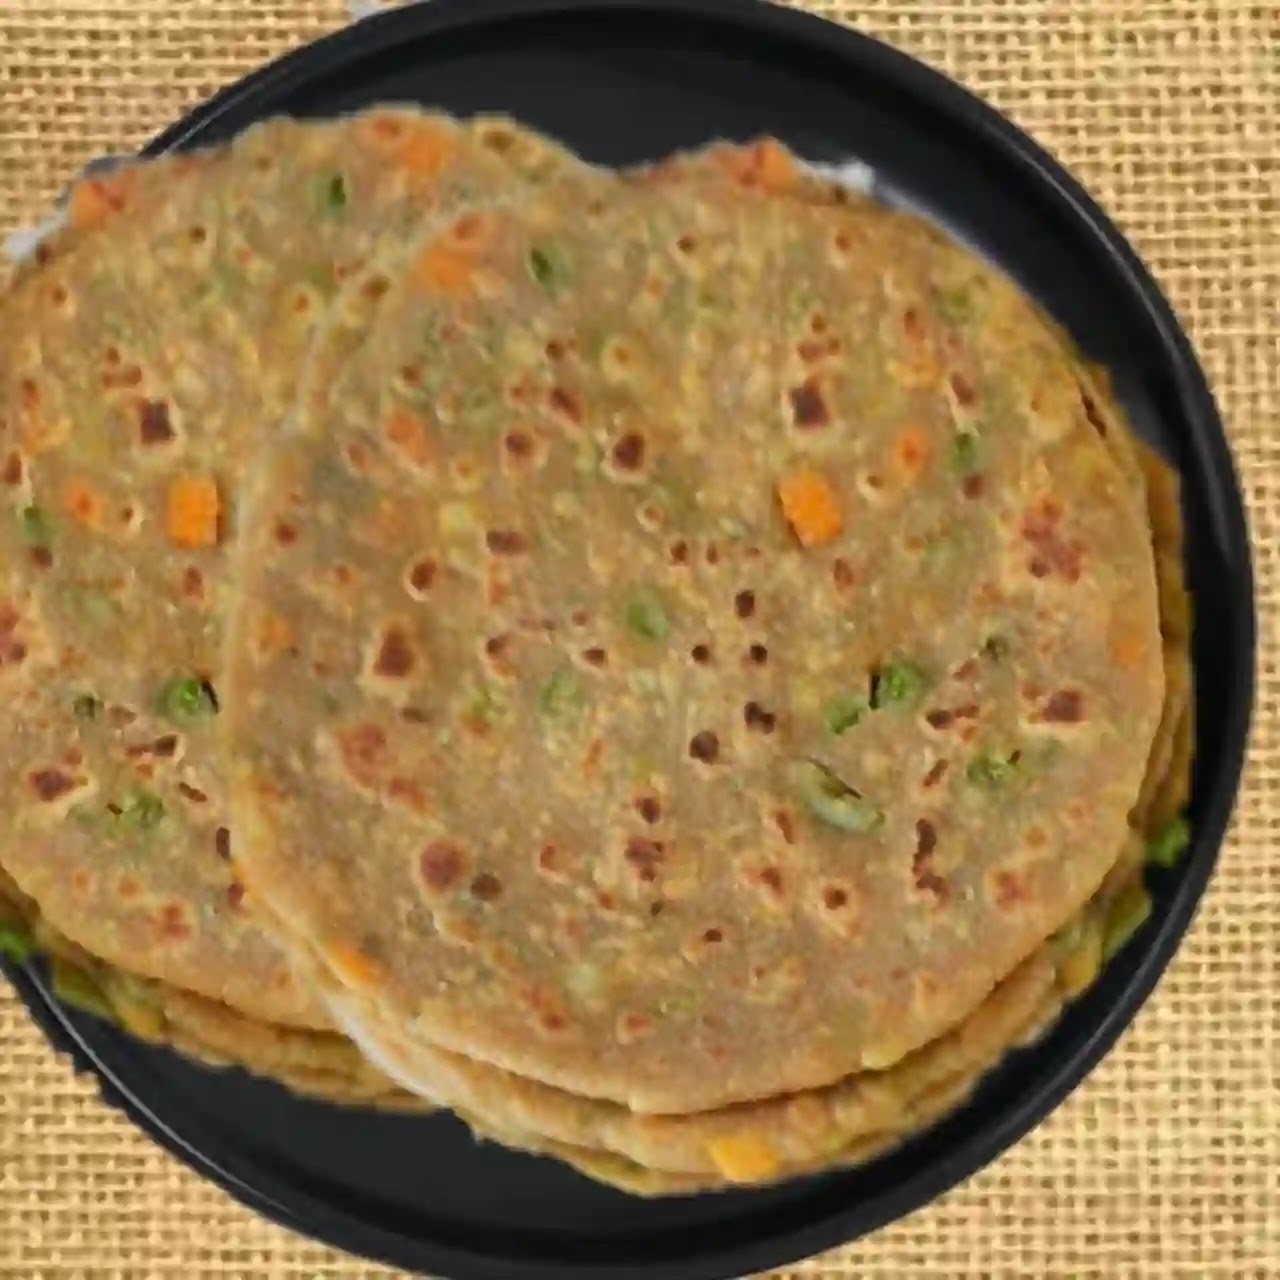 Mix Veg Paratha Recipe | Vegetable Paratha |Healthy Indian Flat Bread